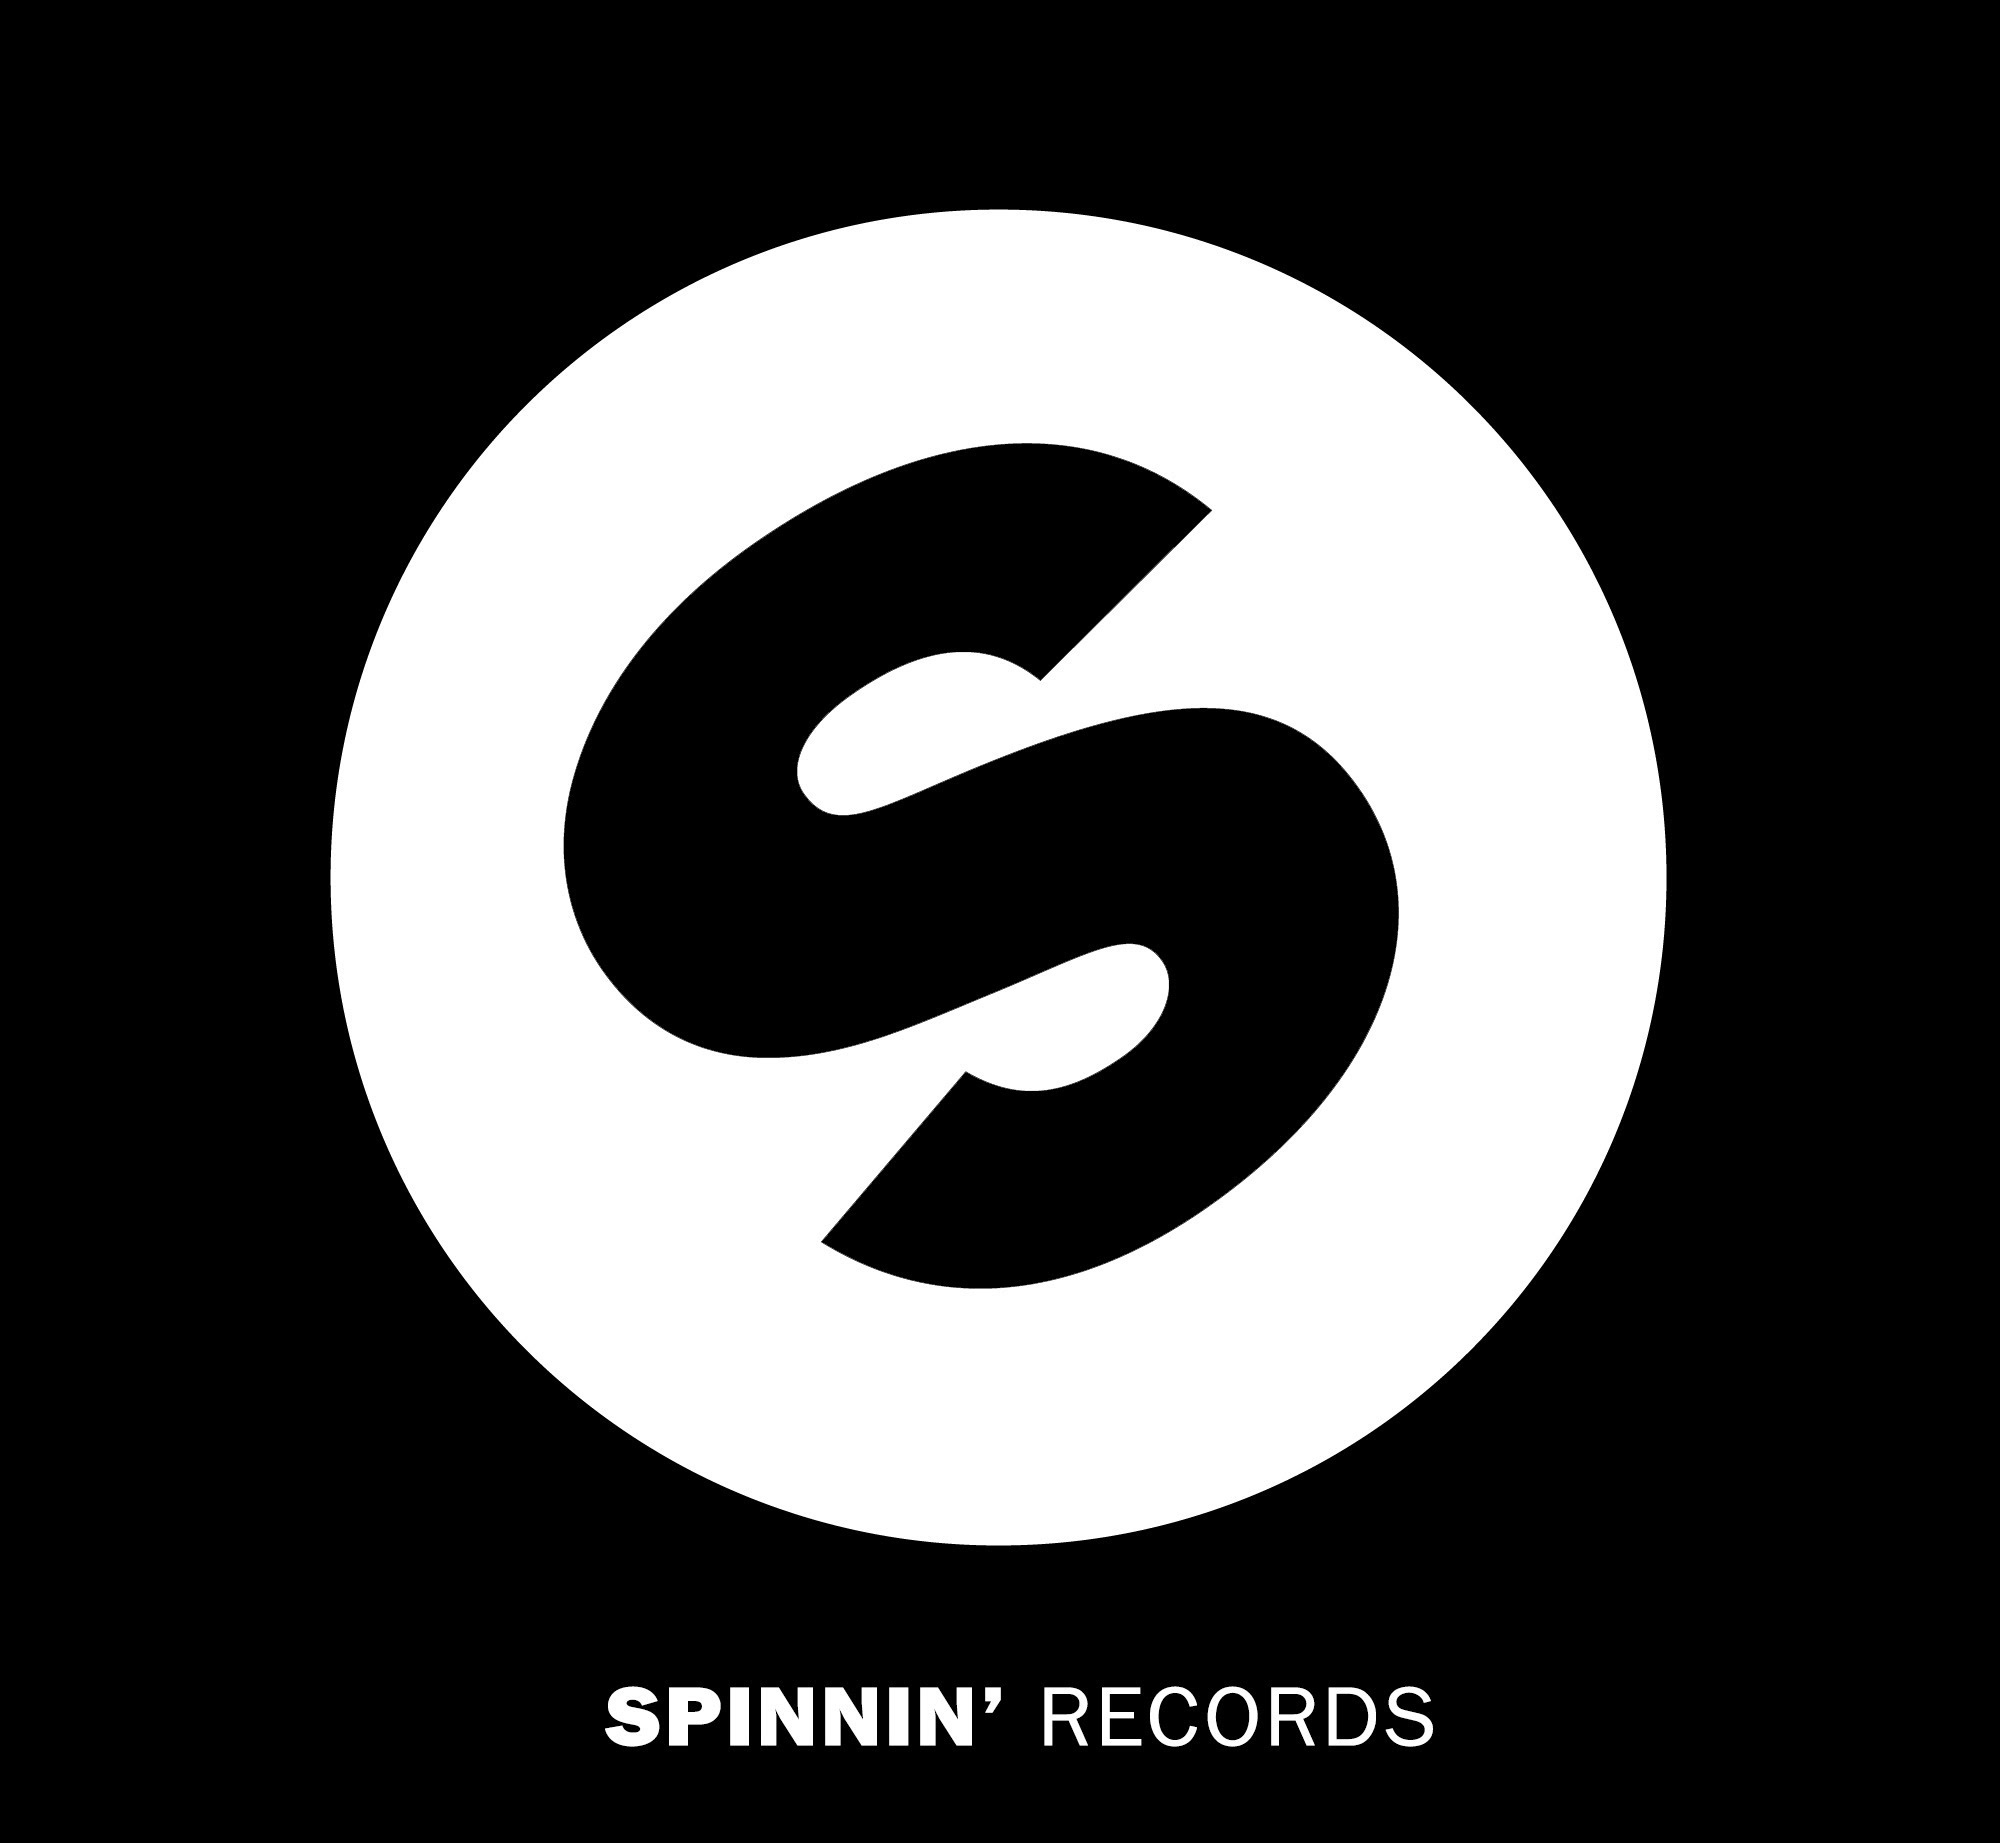 spinninRecords logo.jpg